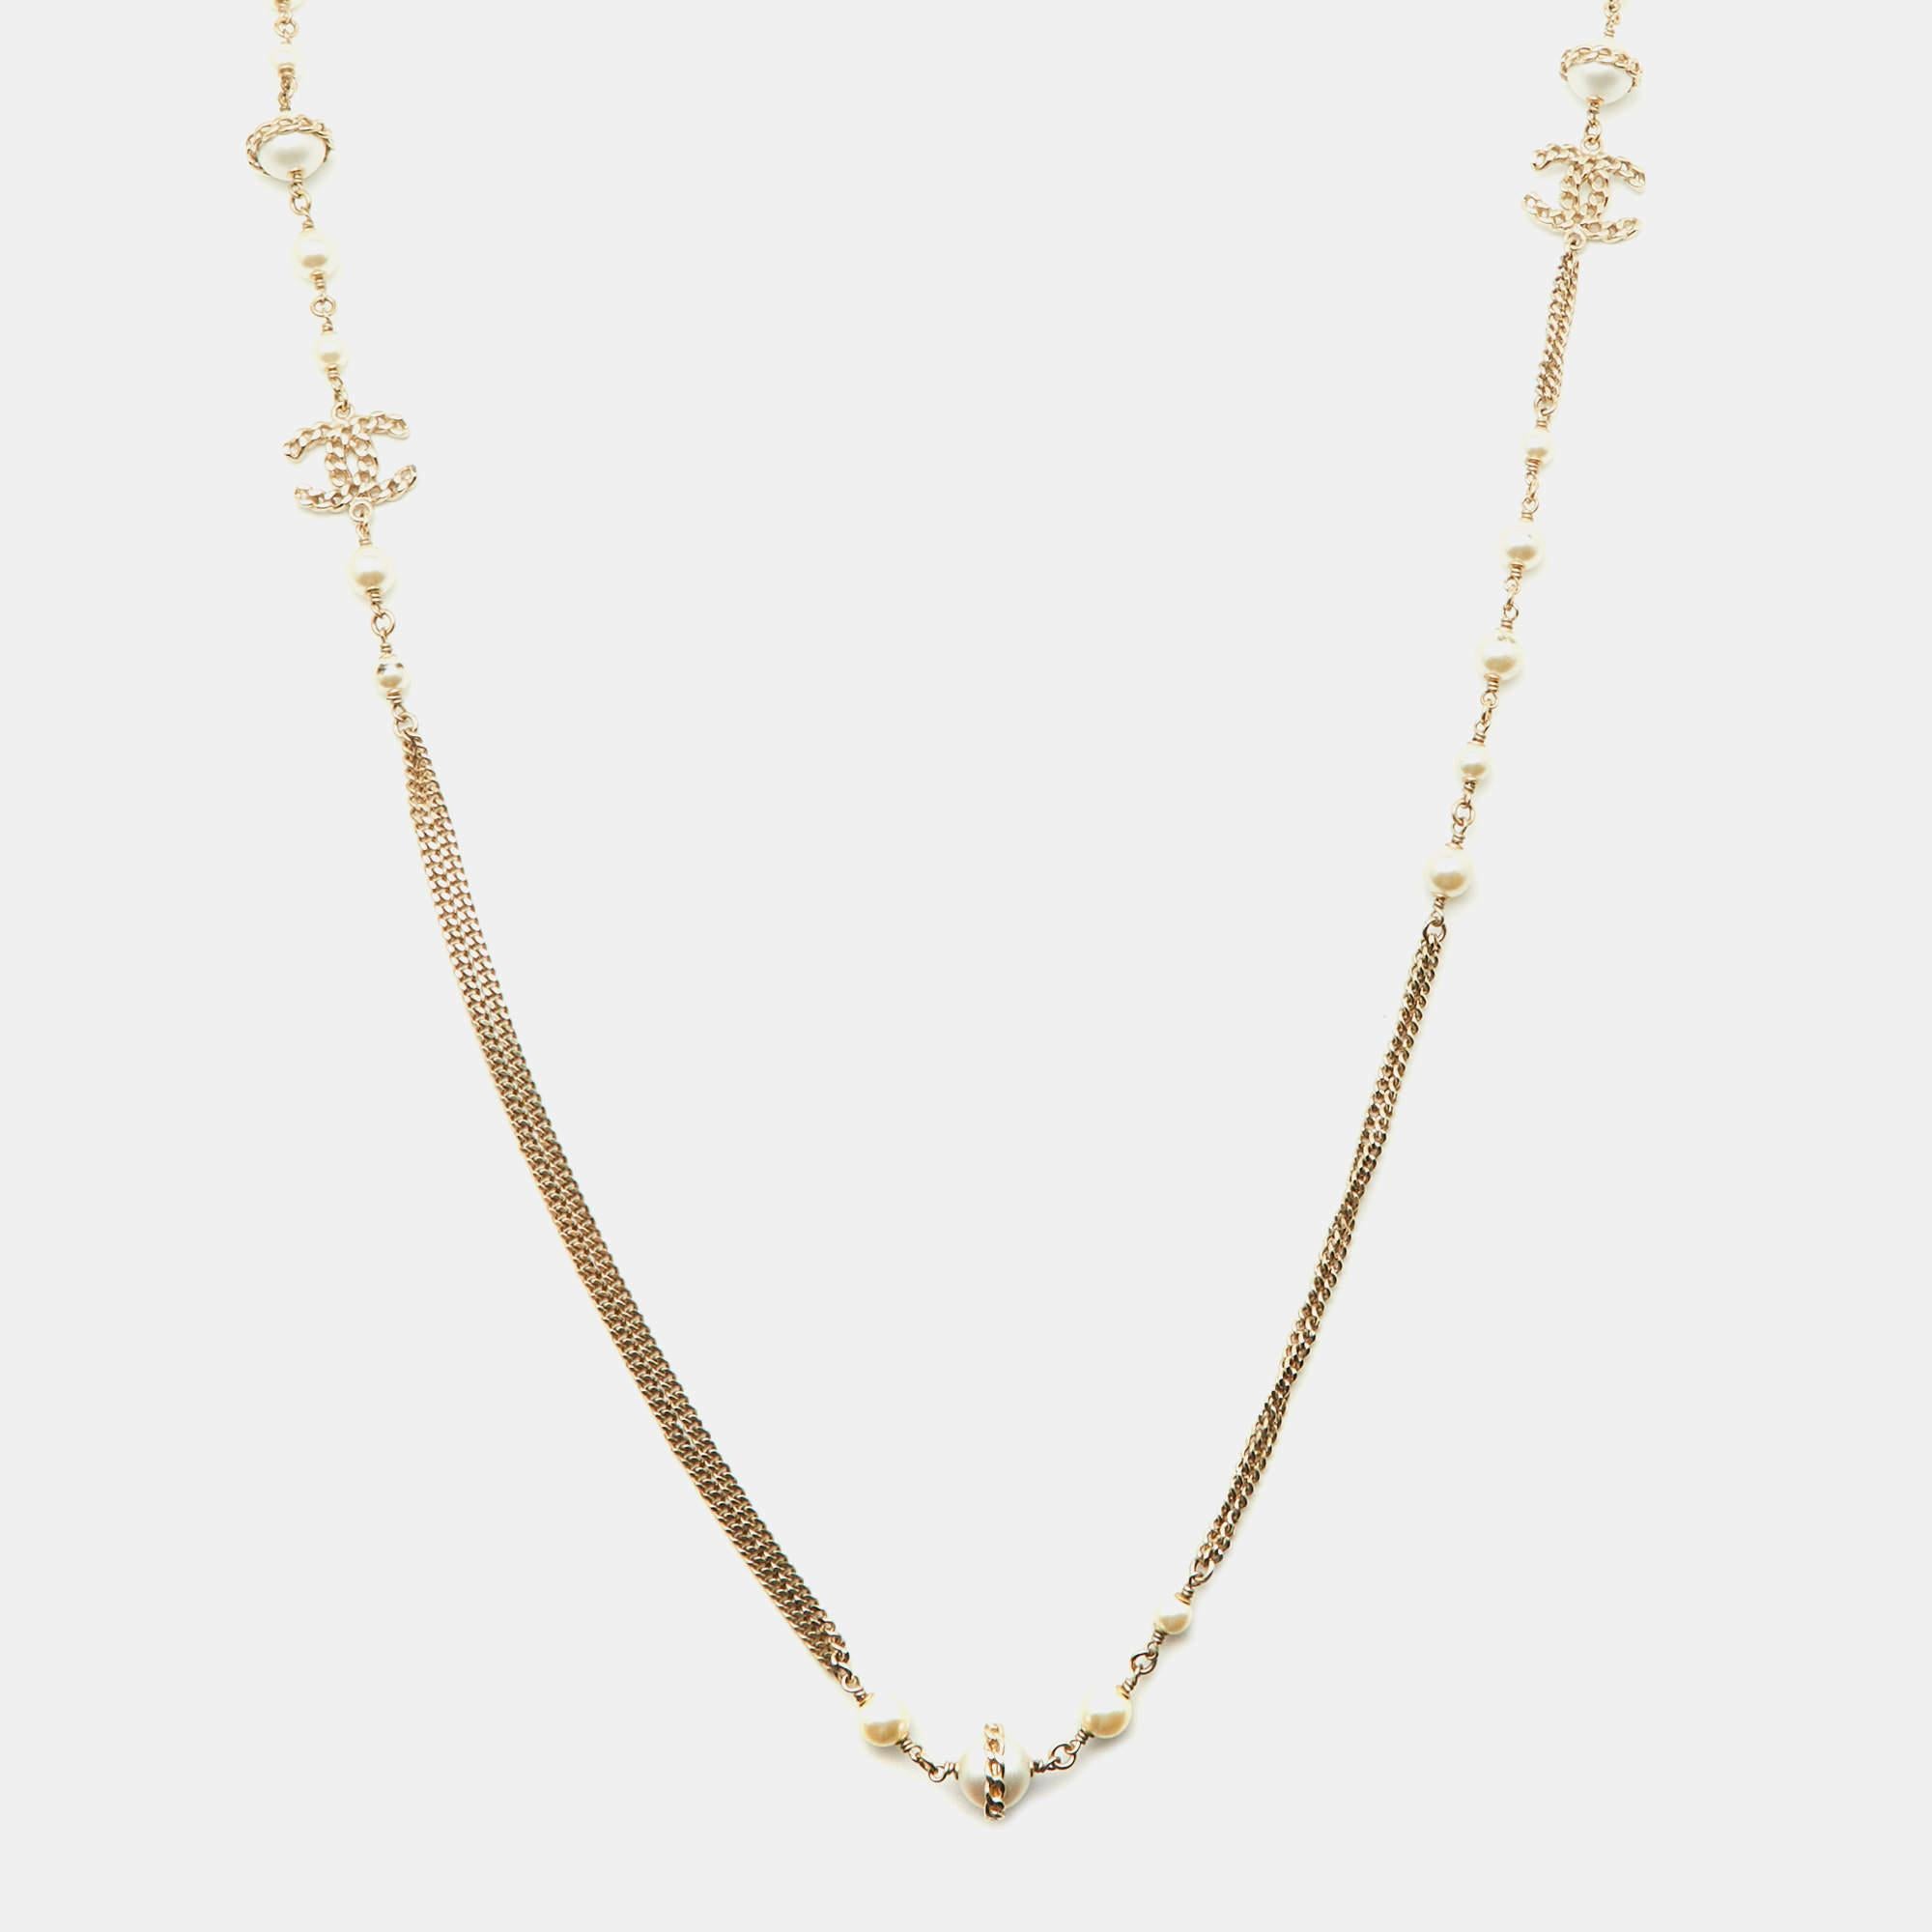 Diese elegante und schicke Halskette von Chanel wurde sorgfältig aus goldfarbenem Metall gefertigt und ist ein exquisites Stück, das es wert ist, es zu besitzen. Das Design strotzt nur so vor Kreativität und besteht aus einem Kettenglied, das mit